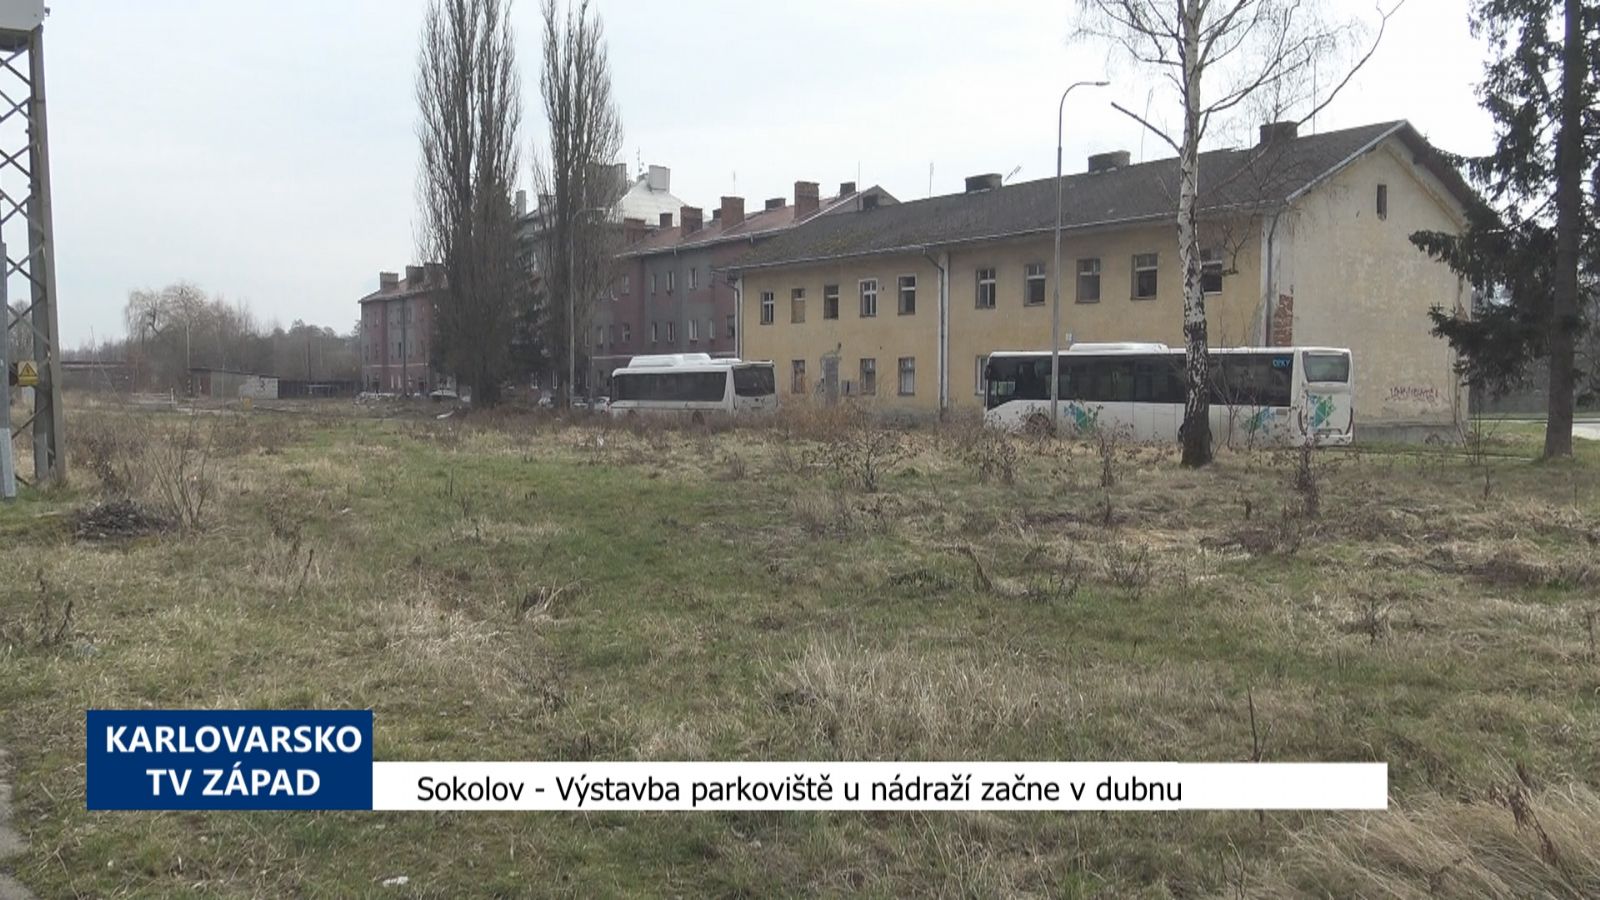 Sokolov: Výstavba parkoviště u nádraží začne v dubnu (TV Západ)